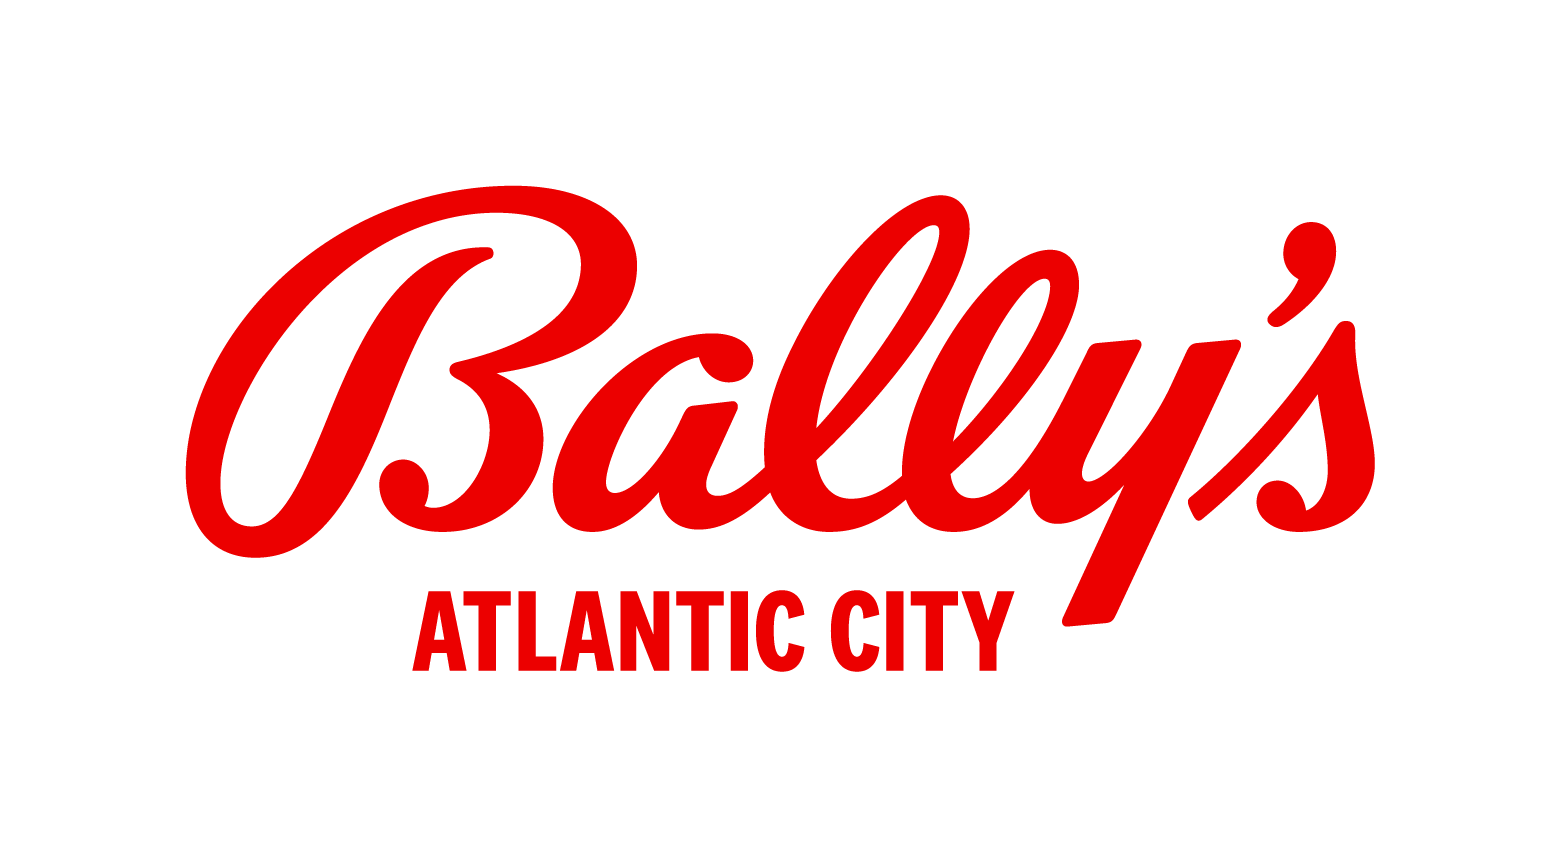 Bally's Atlantic City logo